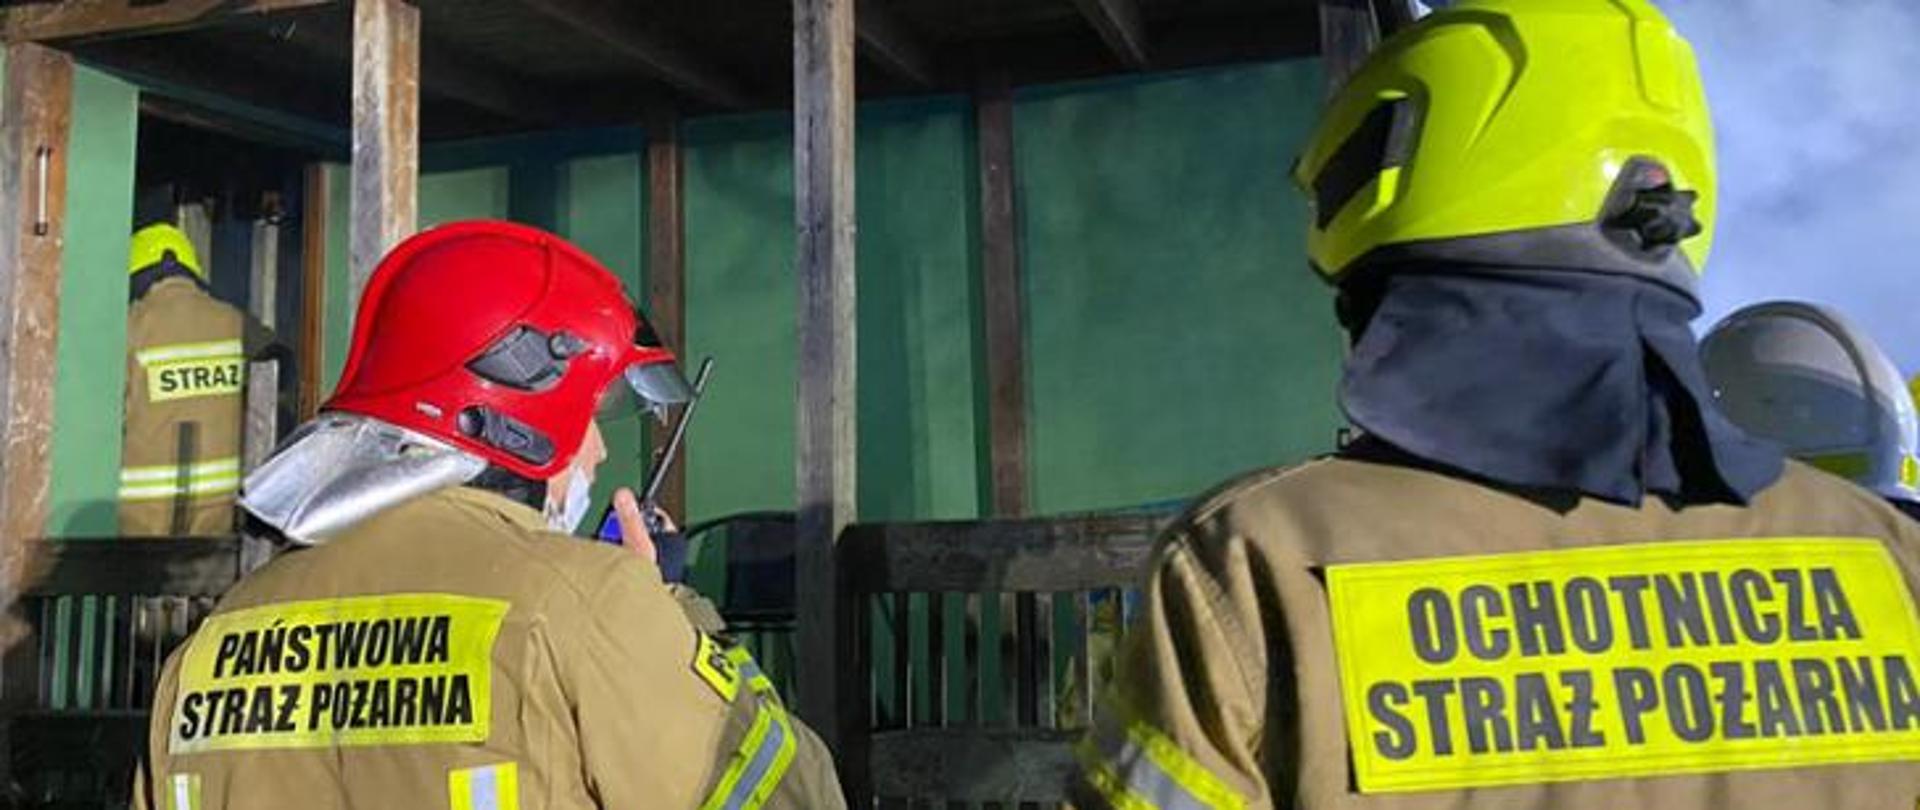 Zdjęcie przedstawia strażaków Państwowej Straży Pożarnej, jak i Ochotniczej Straży Pożarnej współdziałających podczas wspólnie prowadzonych działań